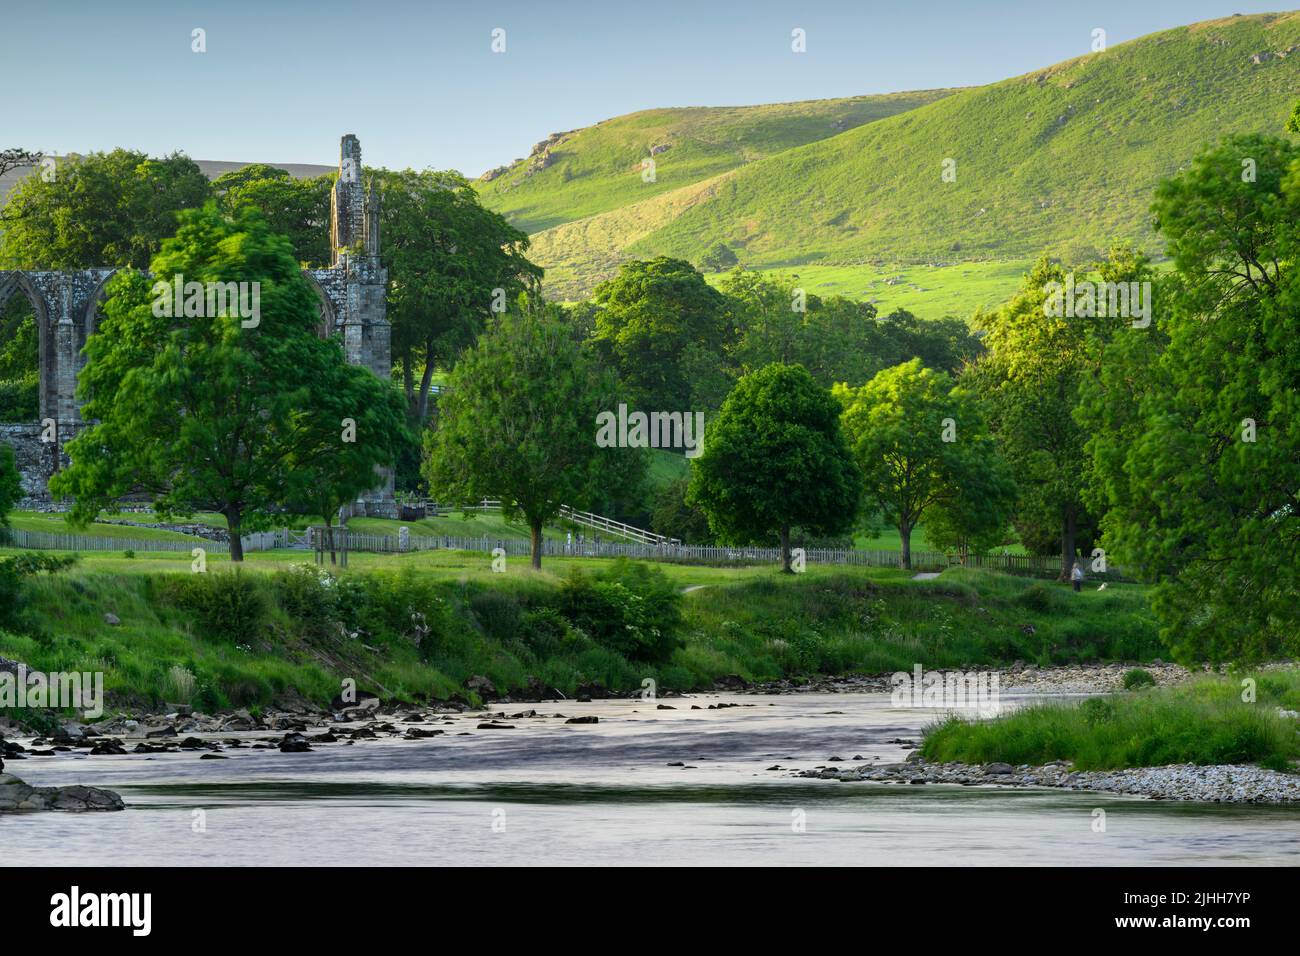 Bolton Abbey (splendida rovina storica lungo il fiume, fiume tortuoso, colline ondulate al sole, serata estiva) - Wharfedale Yorkshire Dales, Inghilterra, Regno Unito Foto Stock